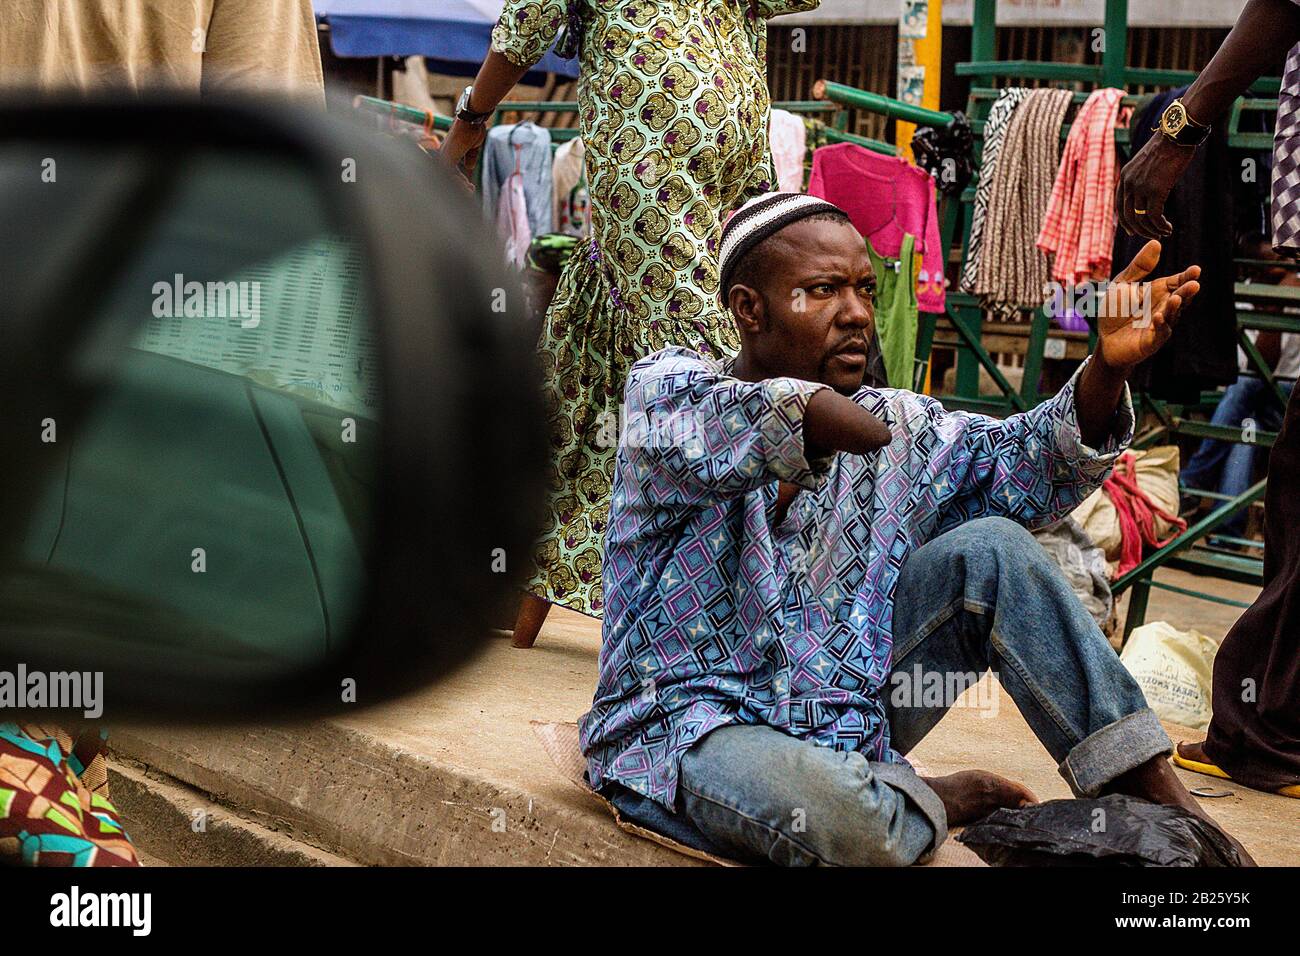 Ein Bettler mit amputierter Hand wird durch das Fenster eines Autos auf einer Straße in Nigeria gesehen. Stockfoto